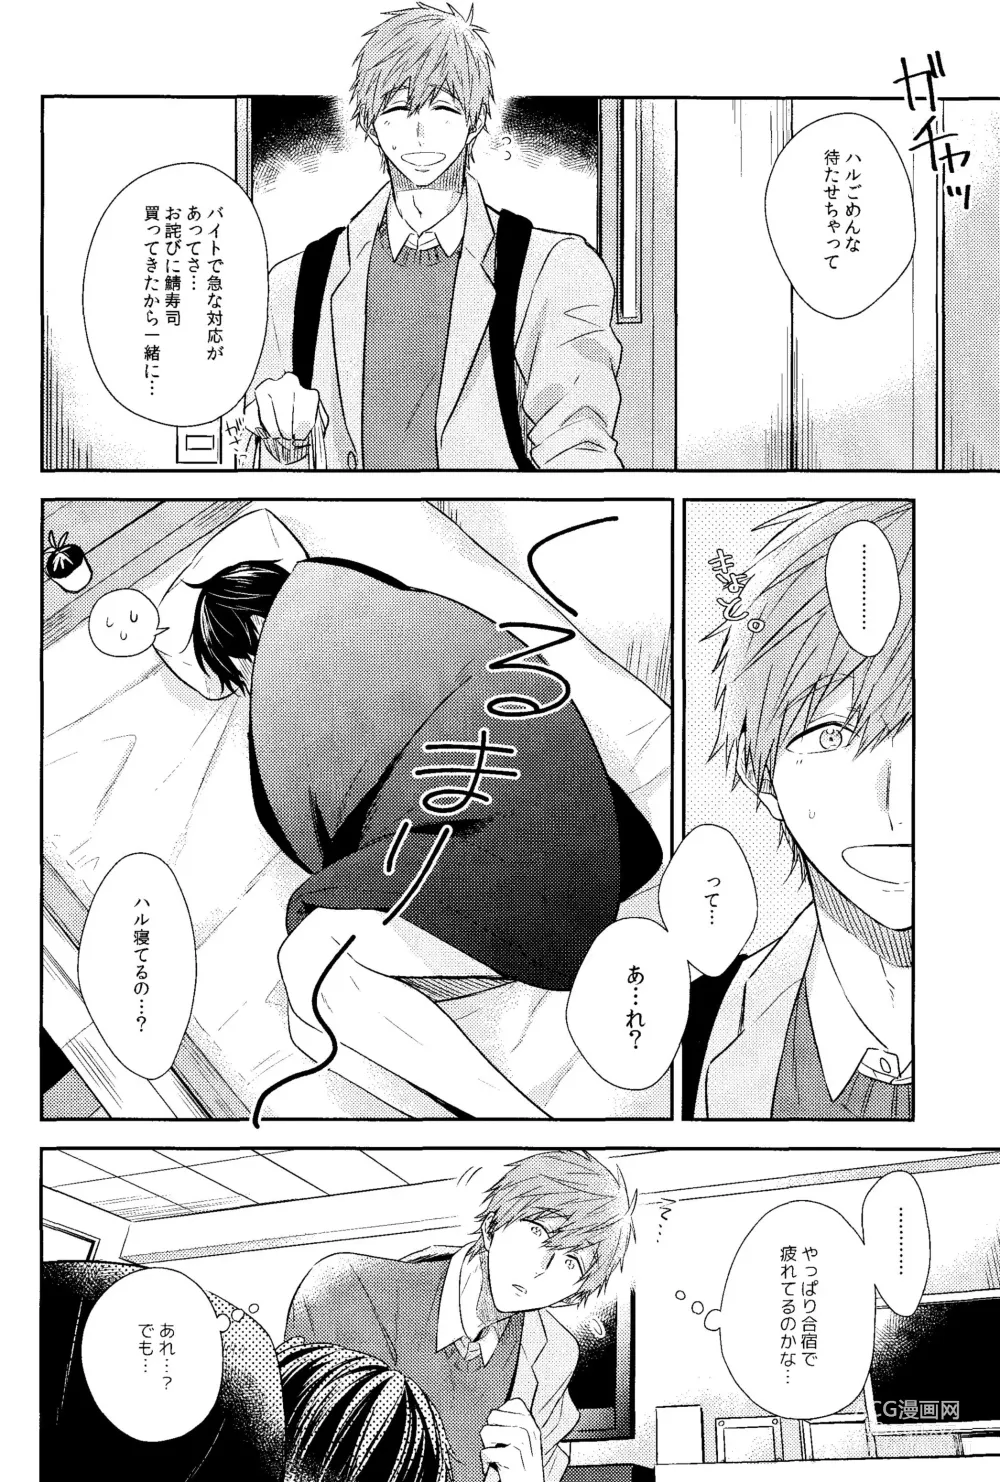 Page 13 of doujinshi Kare Knit to Makoto to Haruka.